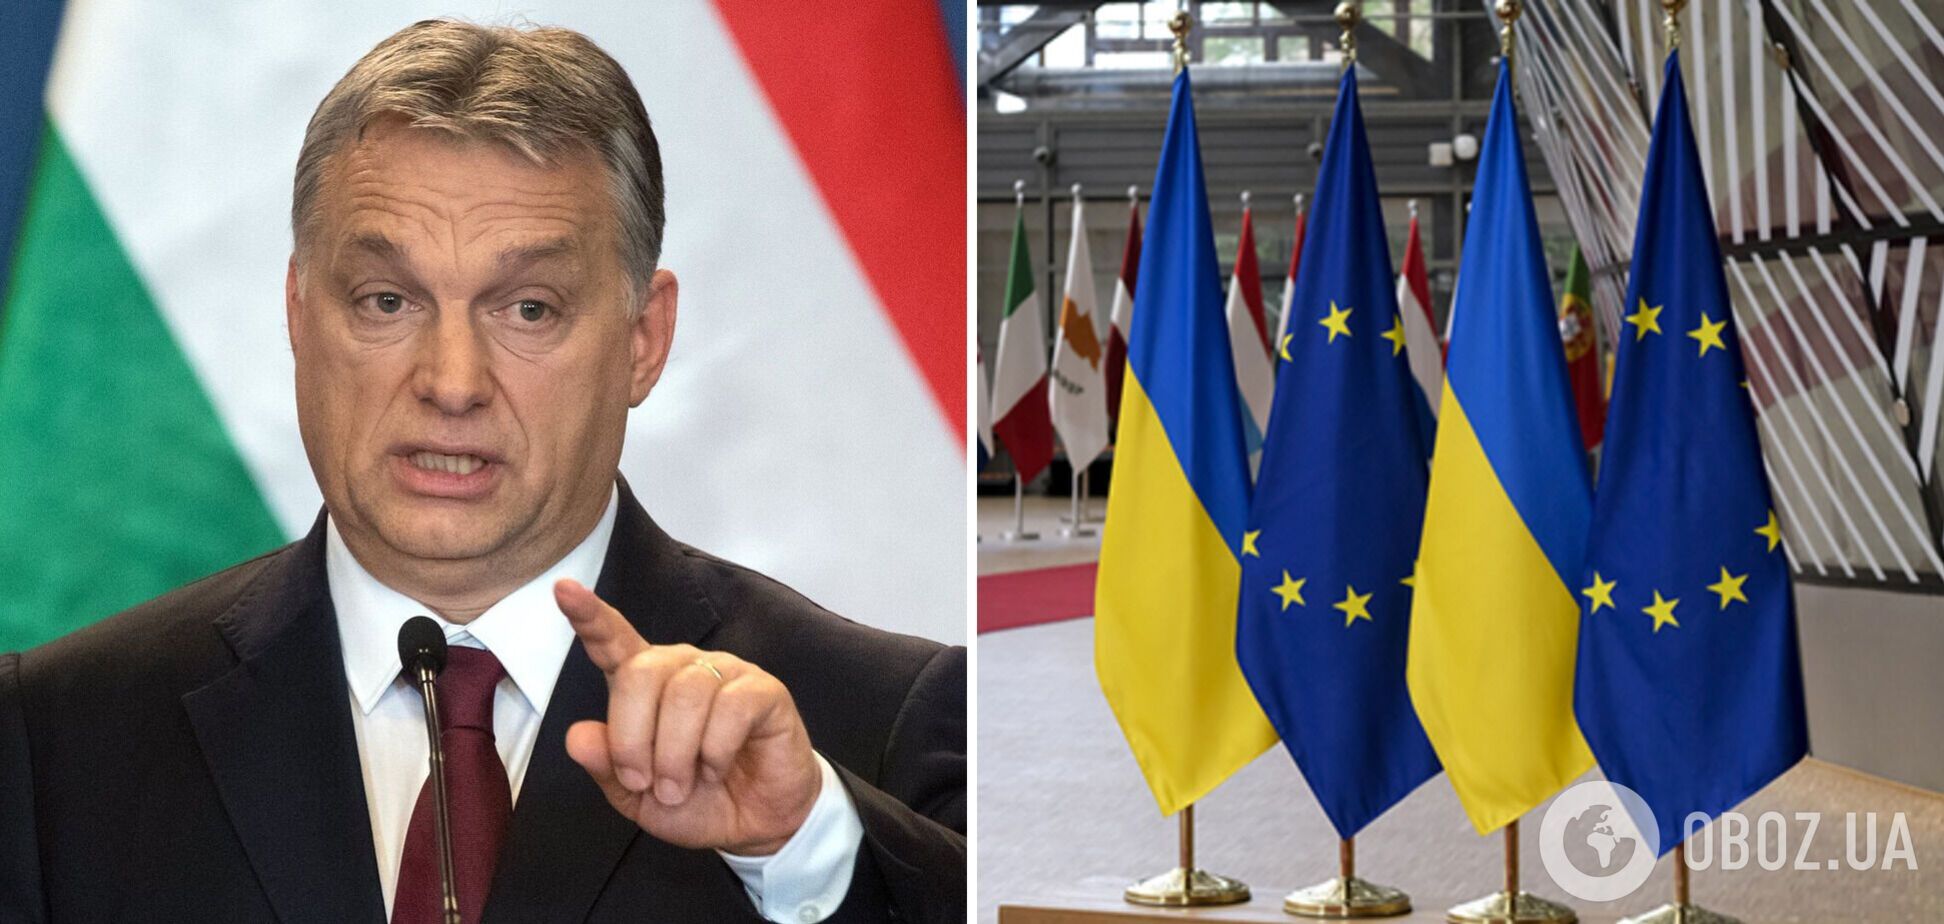 Єврокомісія має намір розморозити виділення для Угорщини близько 13 млрд євро